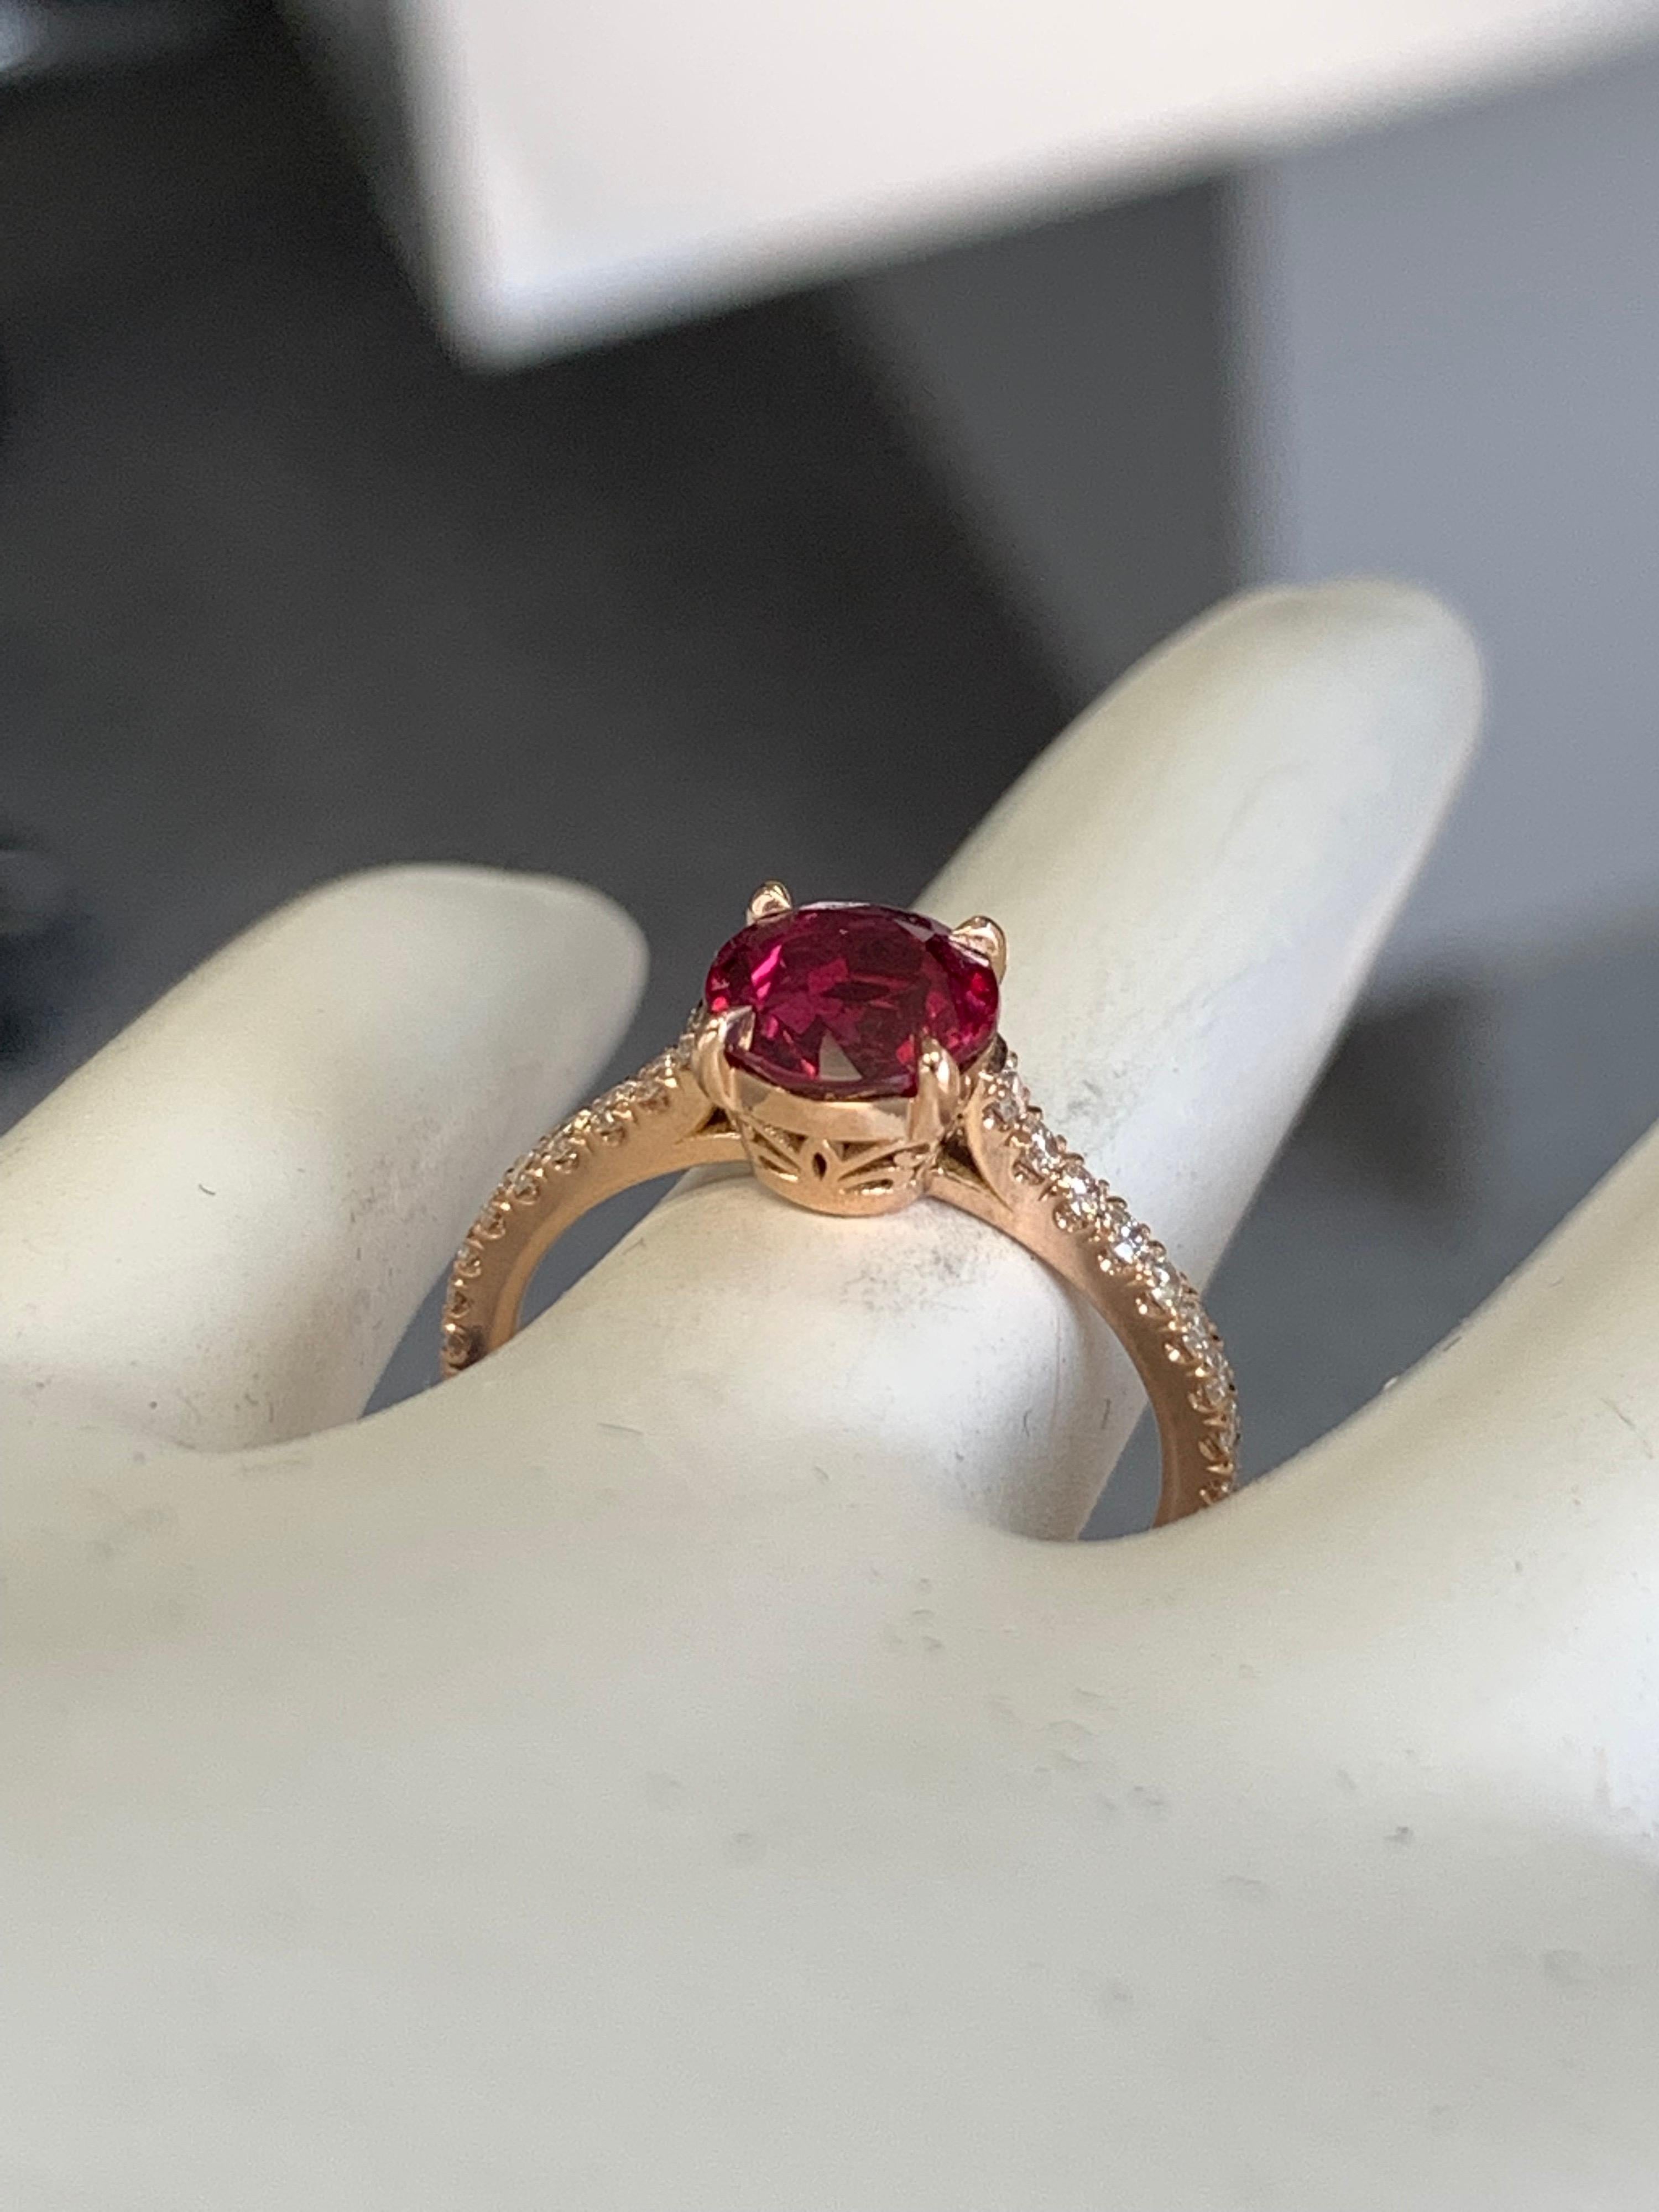 Damen 18K Rose Gold natürlichen Rubin und Diamant-Ring (Größe 5,75).

Der GIA-zertifizierte Rubin wiegt 1,68 Karat und die Farbe ist 